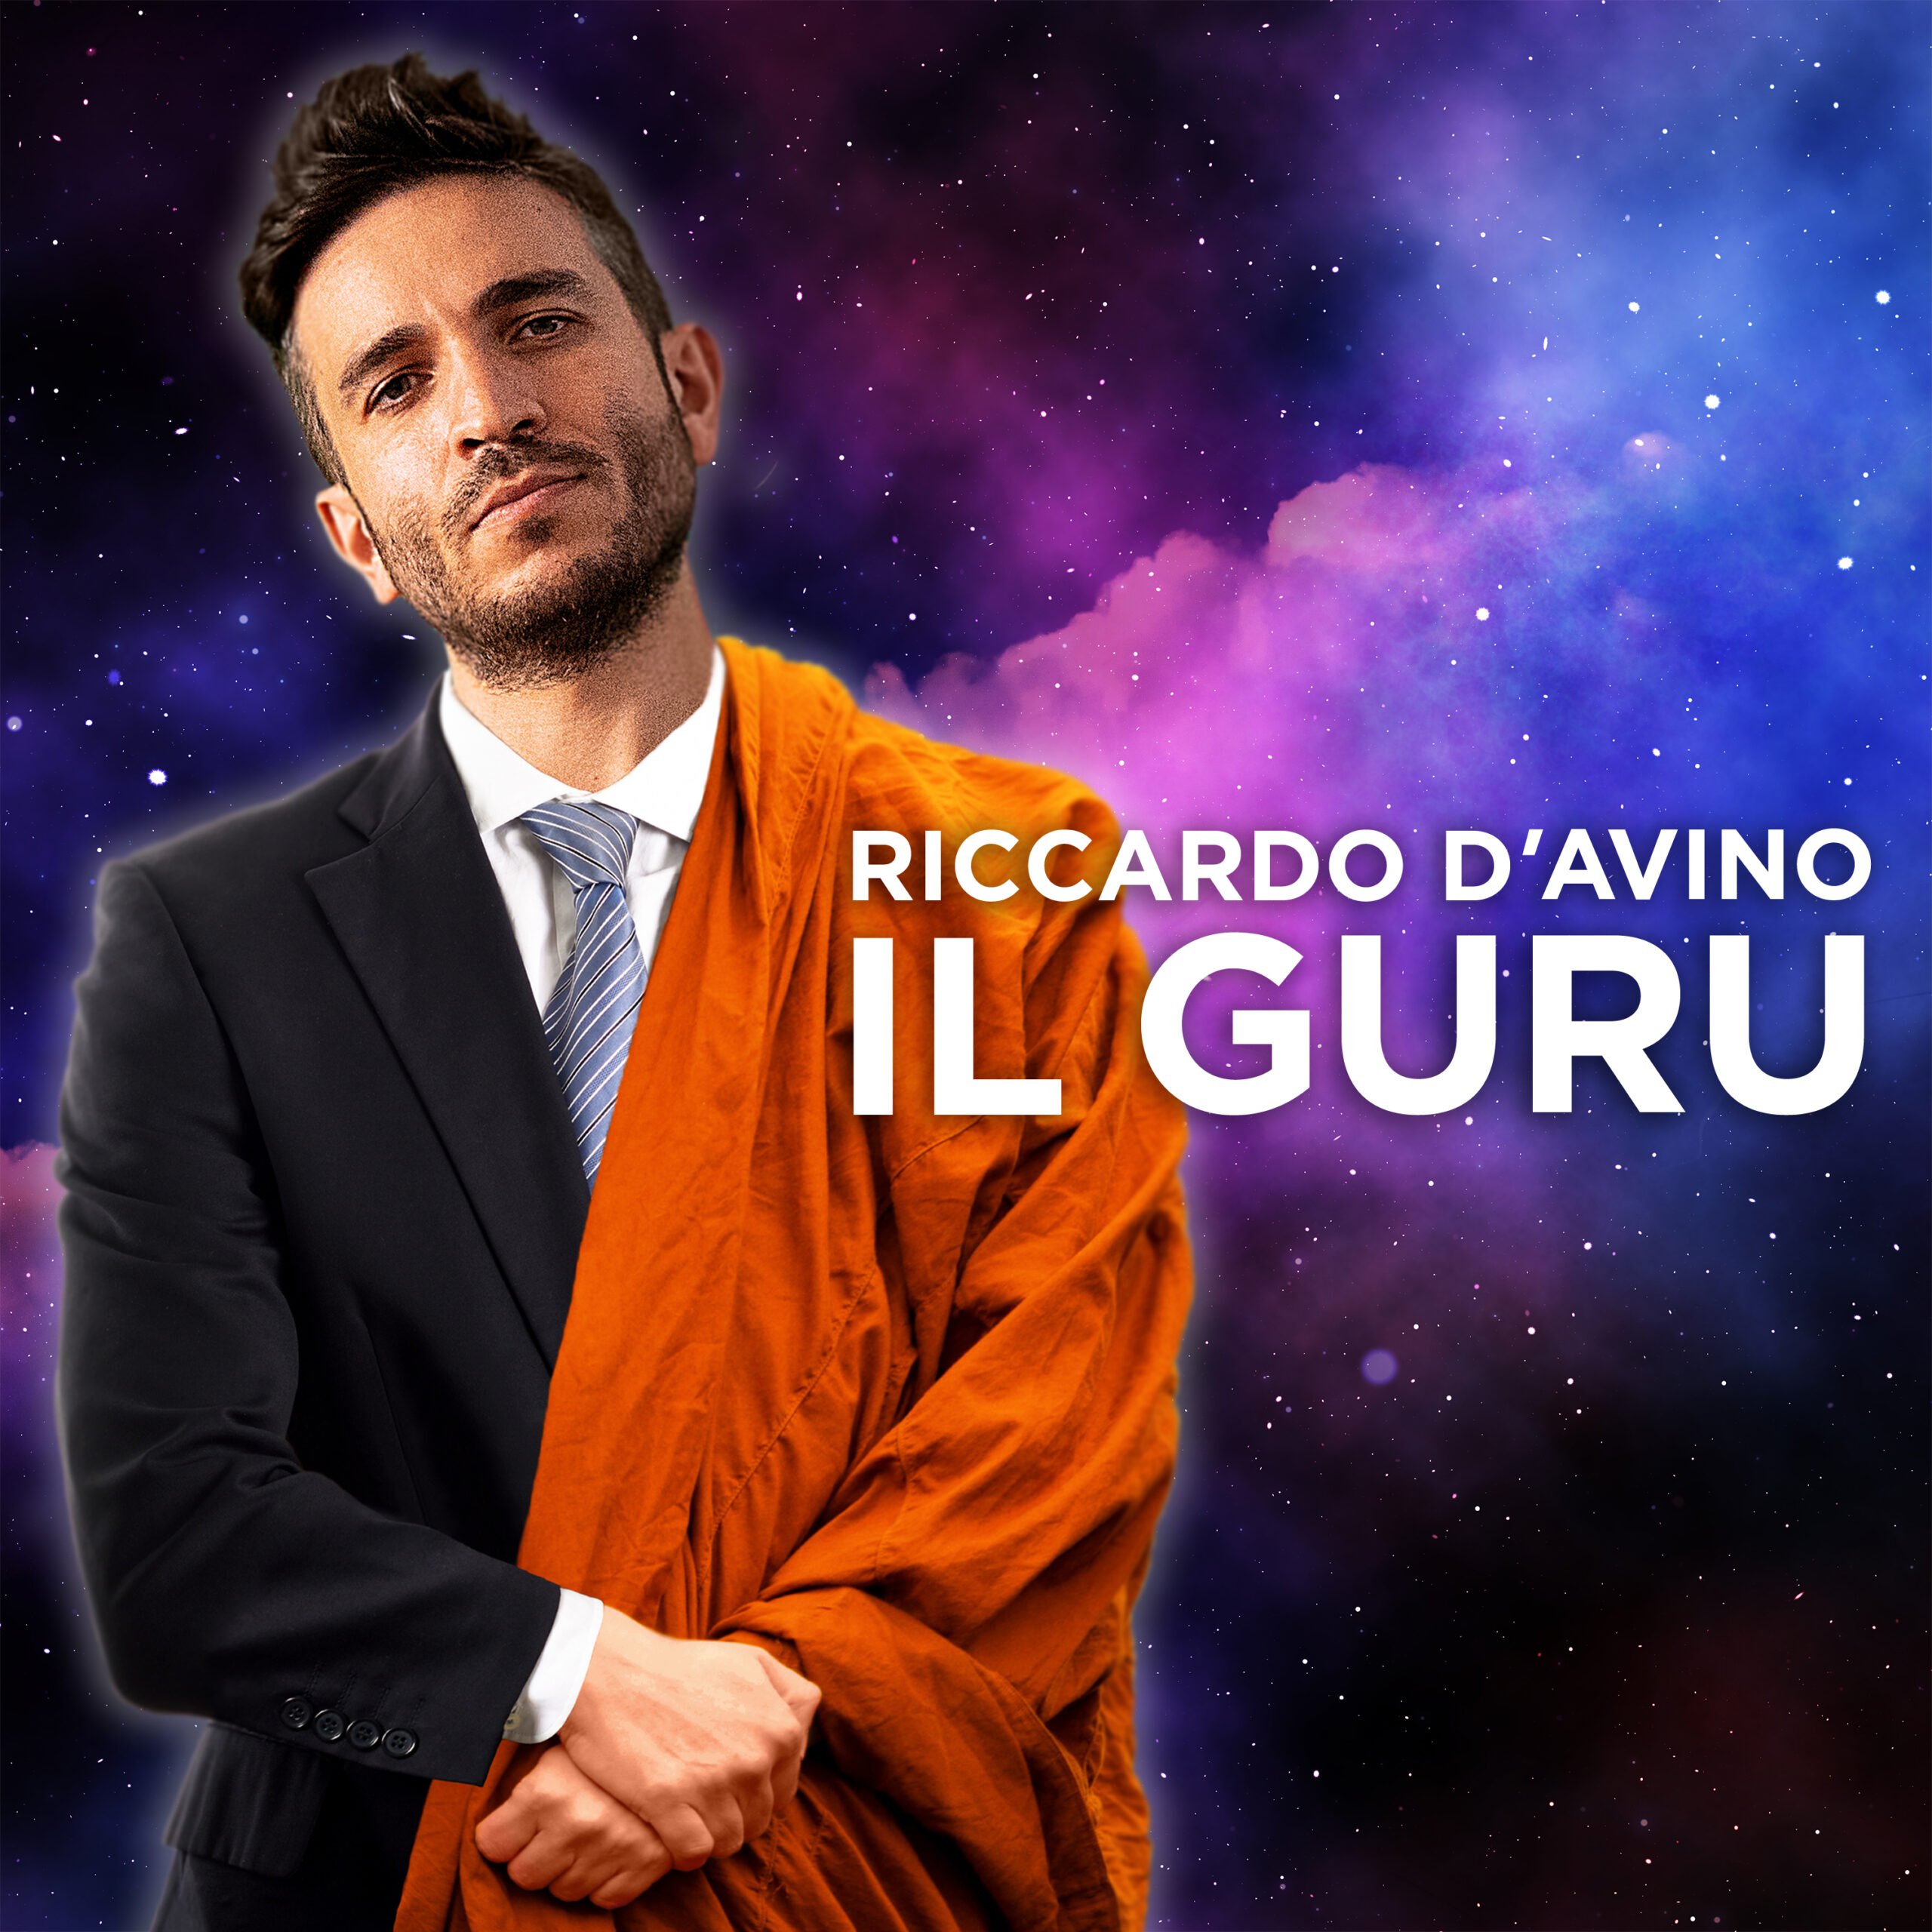 Riccardo D’Avino, pubblica un nuovo, provocatorio brano, “Il guru”